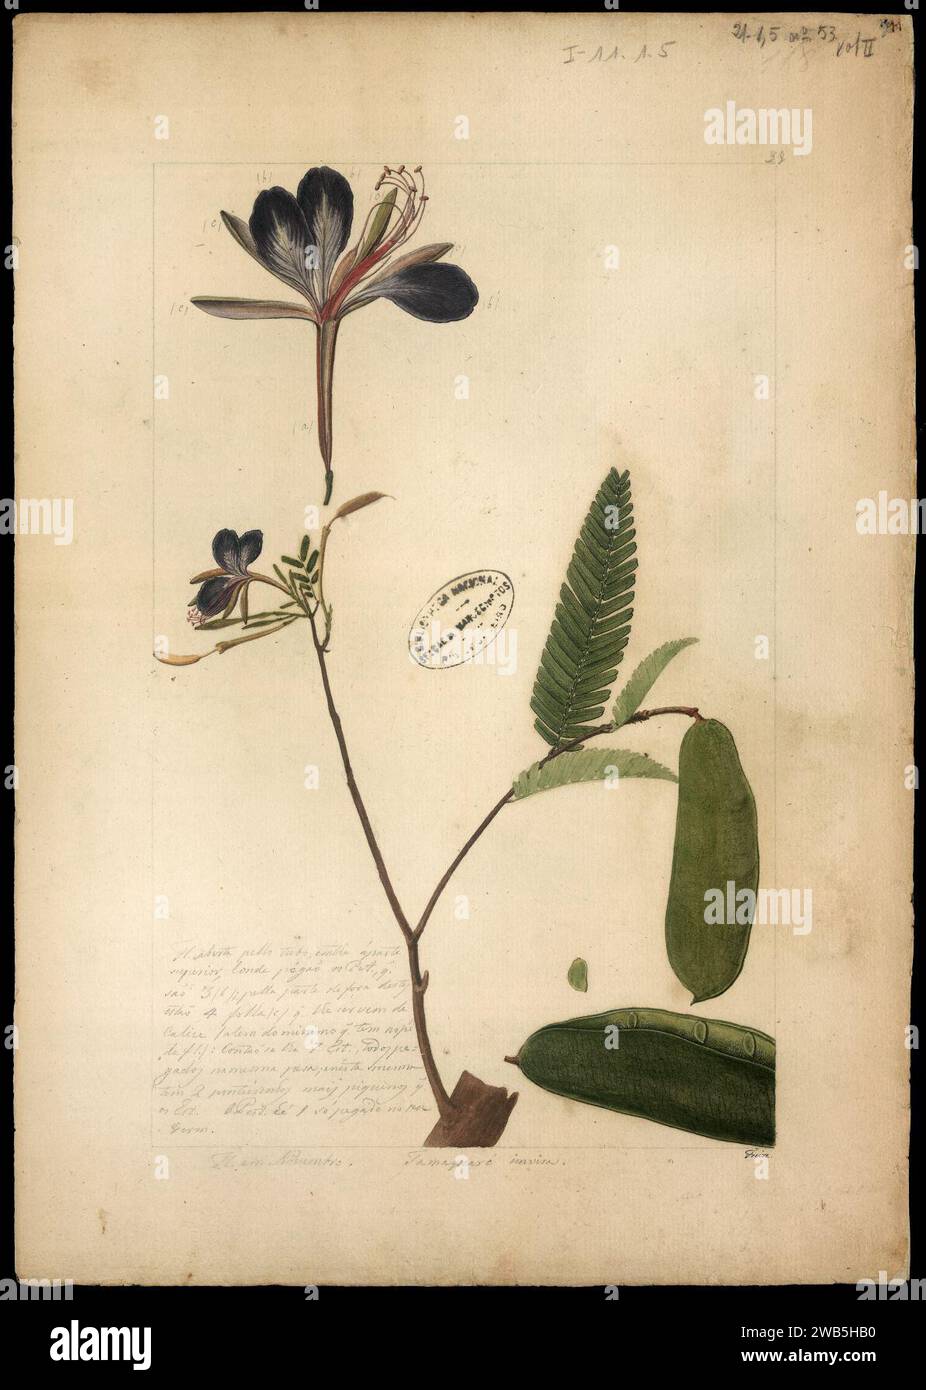 (Heterosfemon mimosoides), Stock Photo